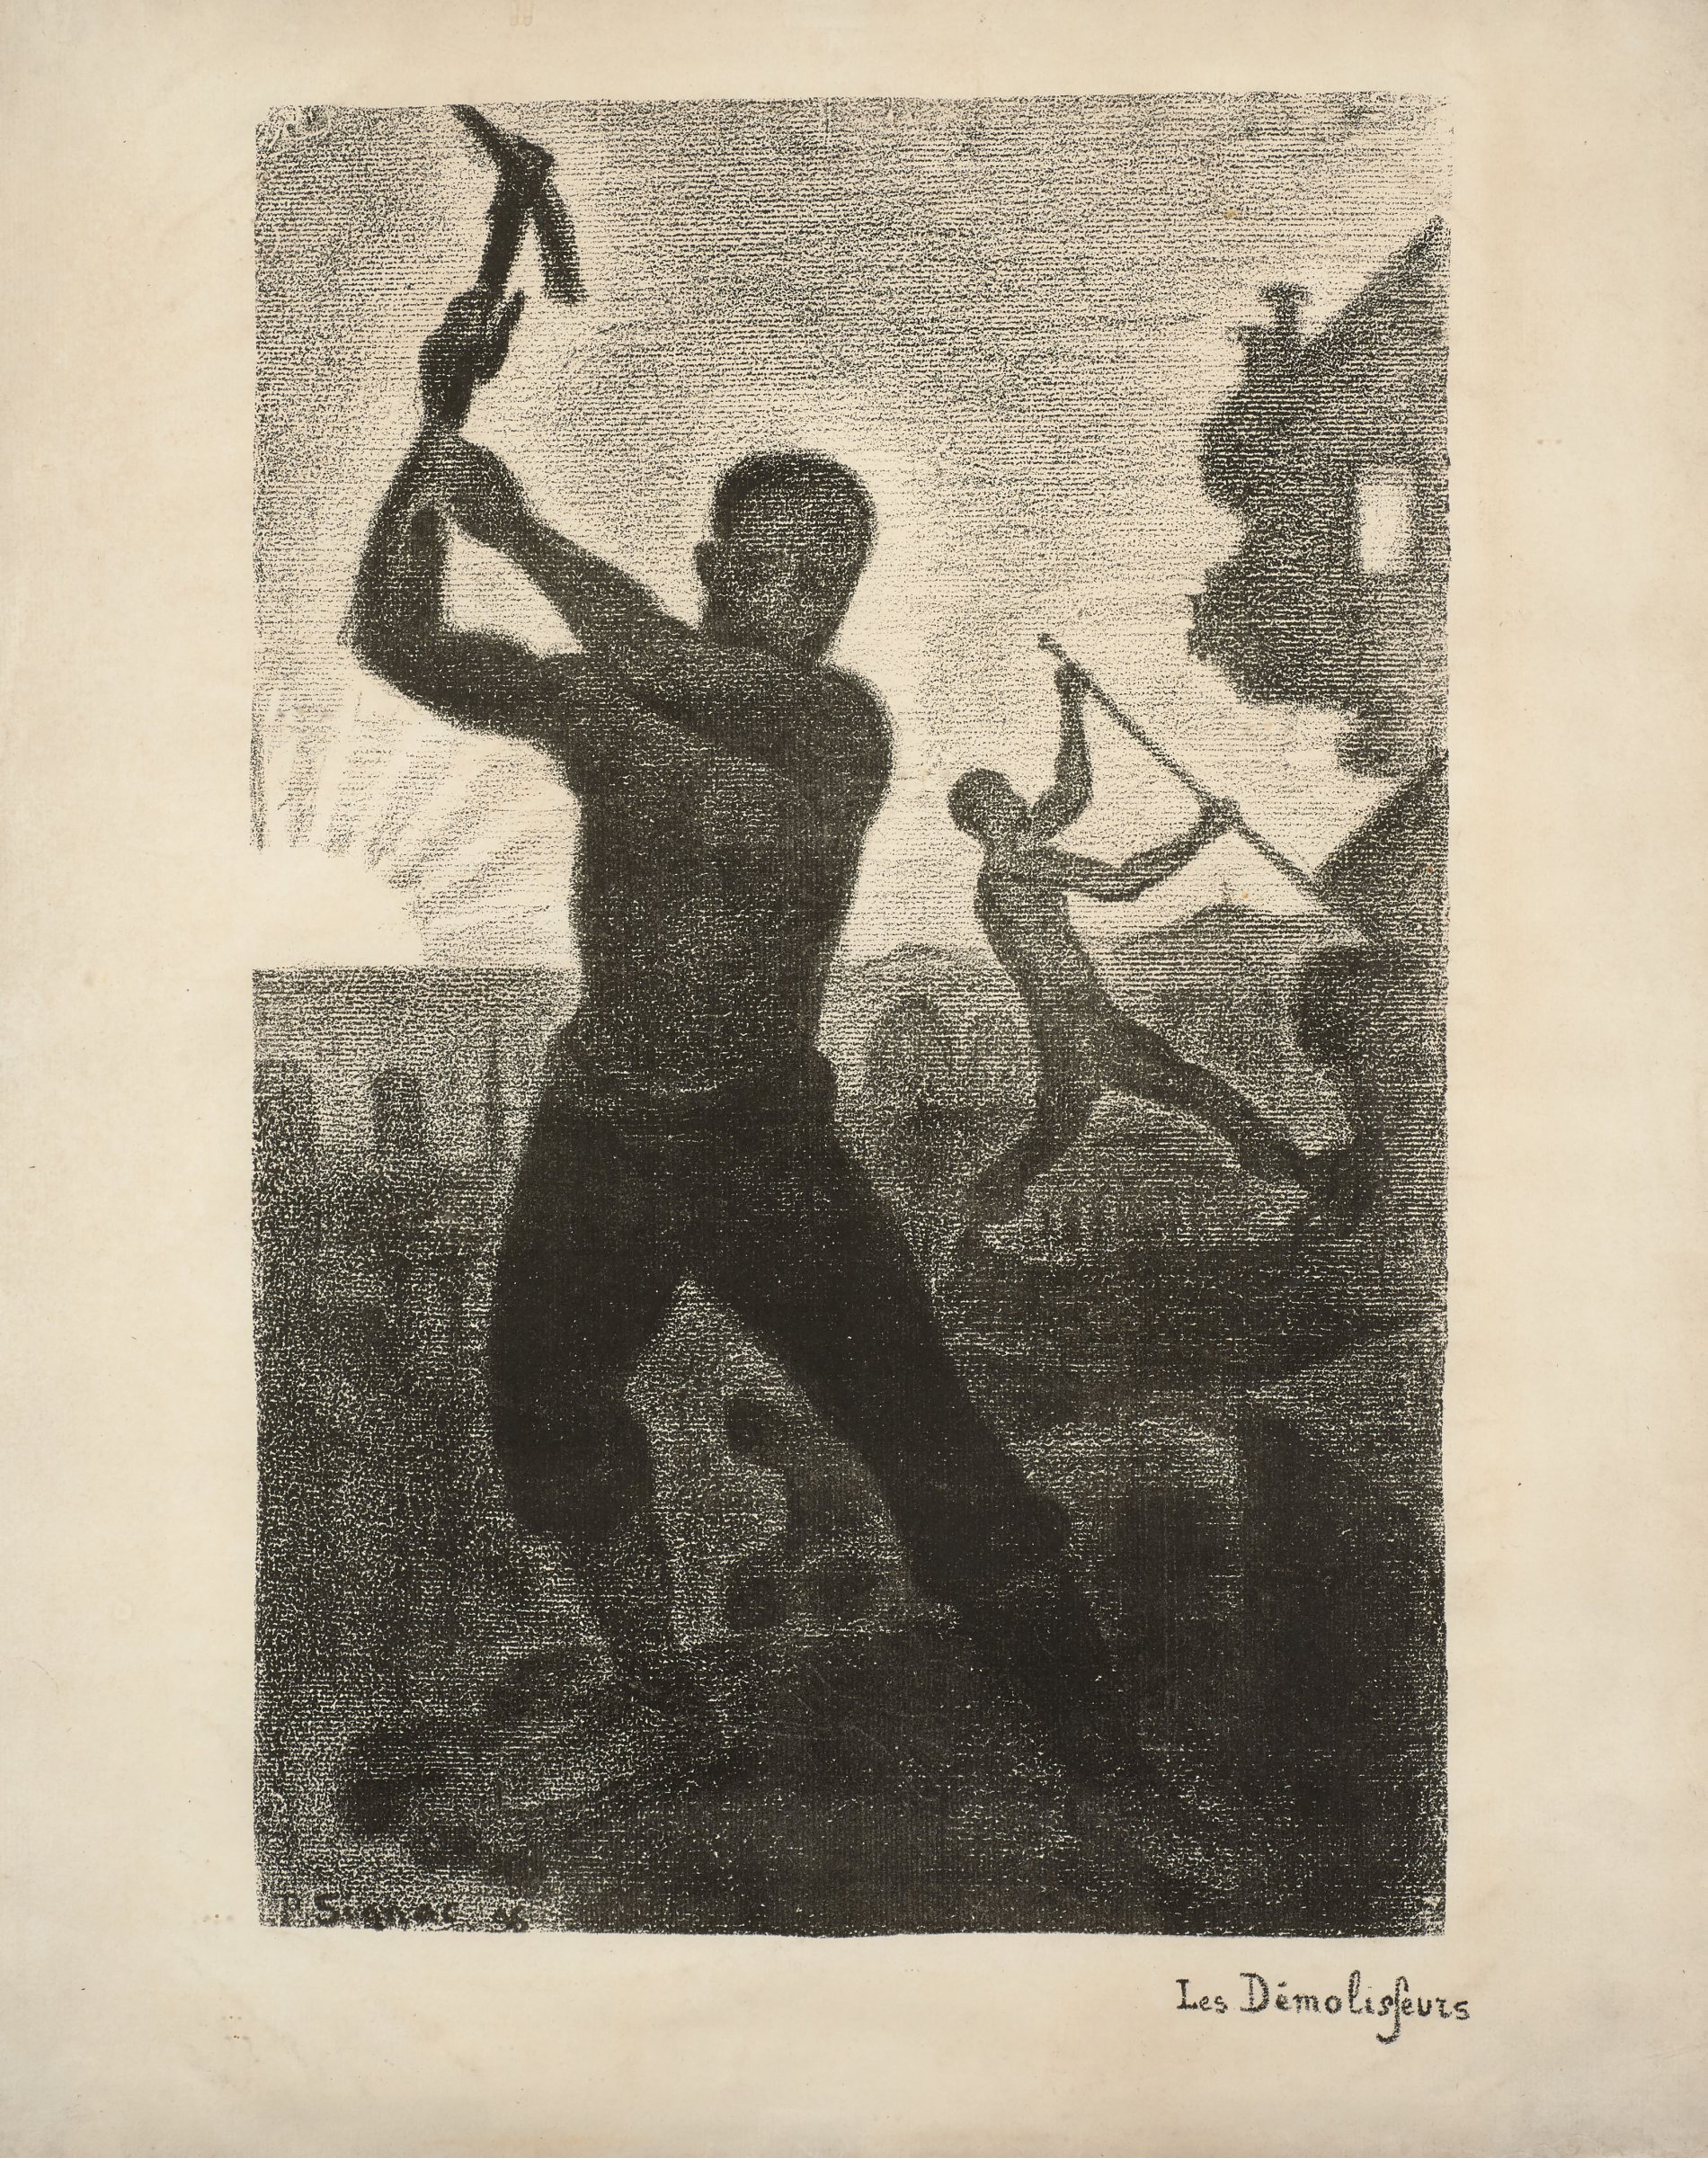 Paul Signac, Les Dmolisseurs, lithograph 1896